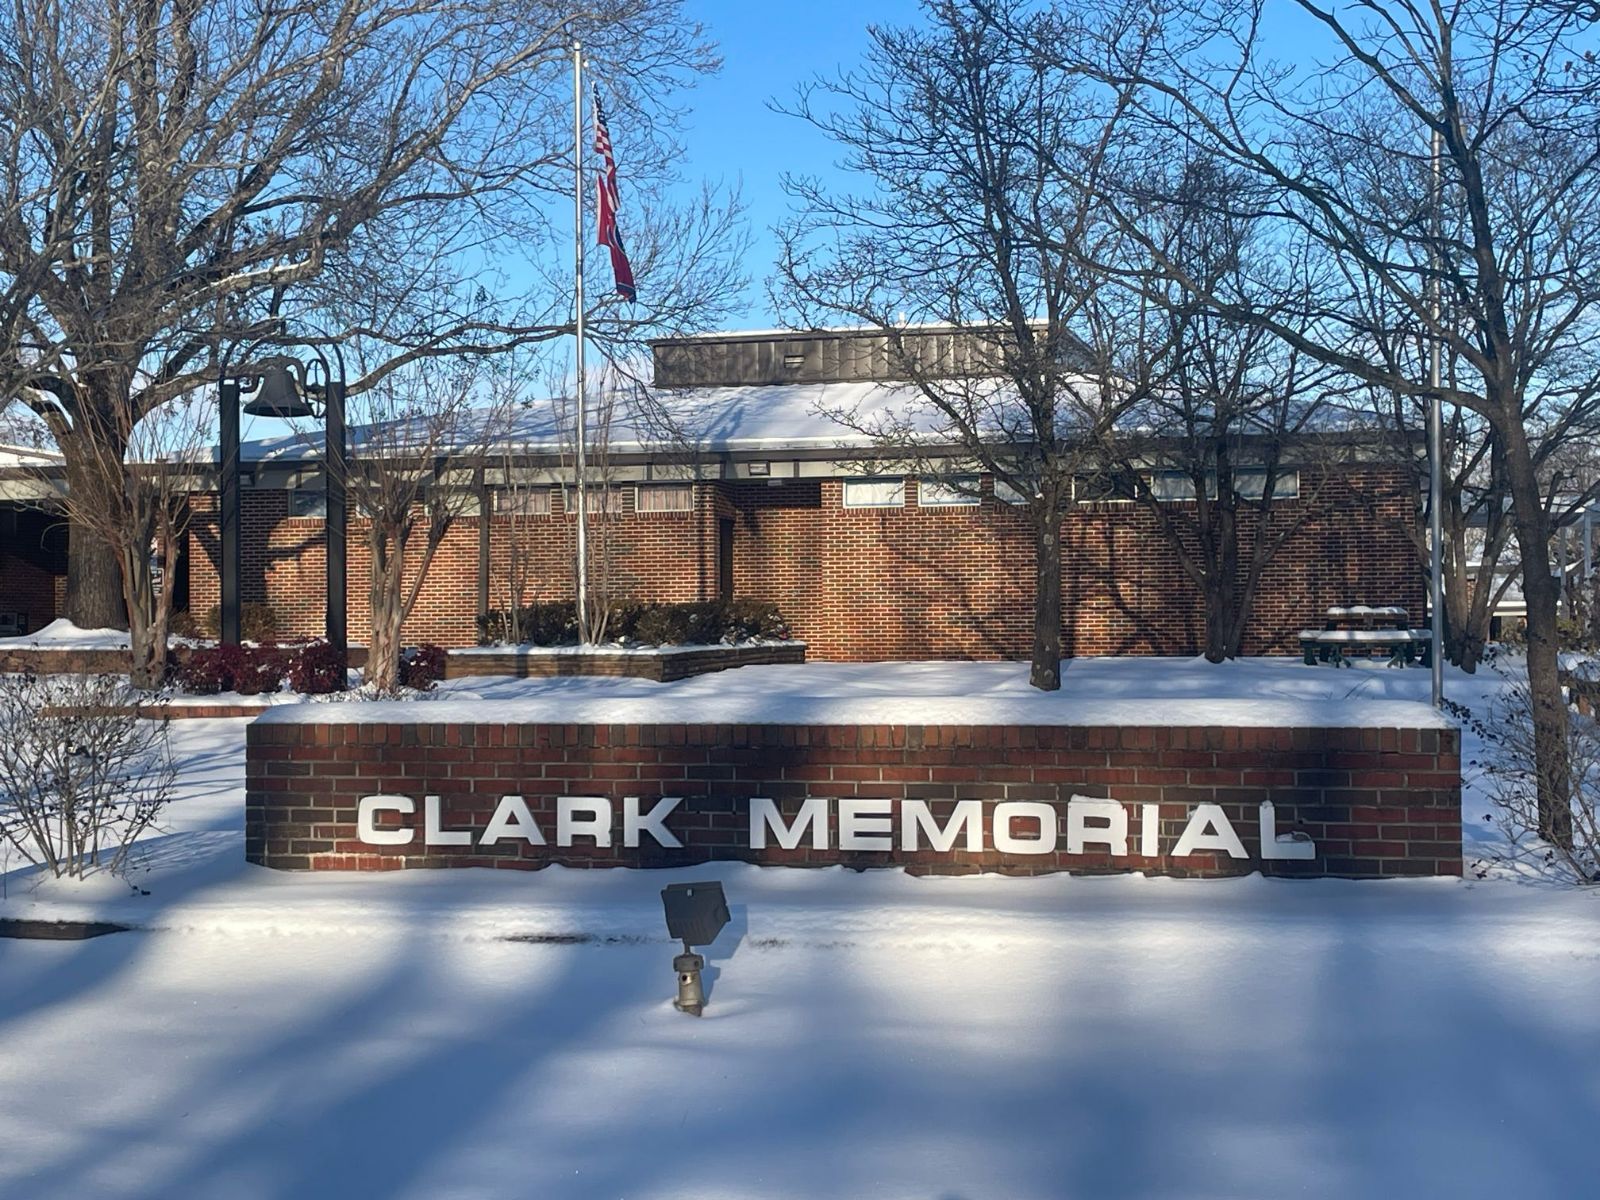 Clark Memorial in the snow